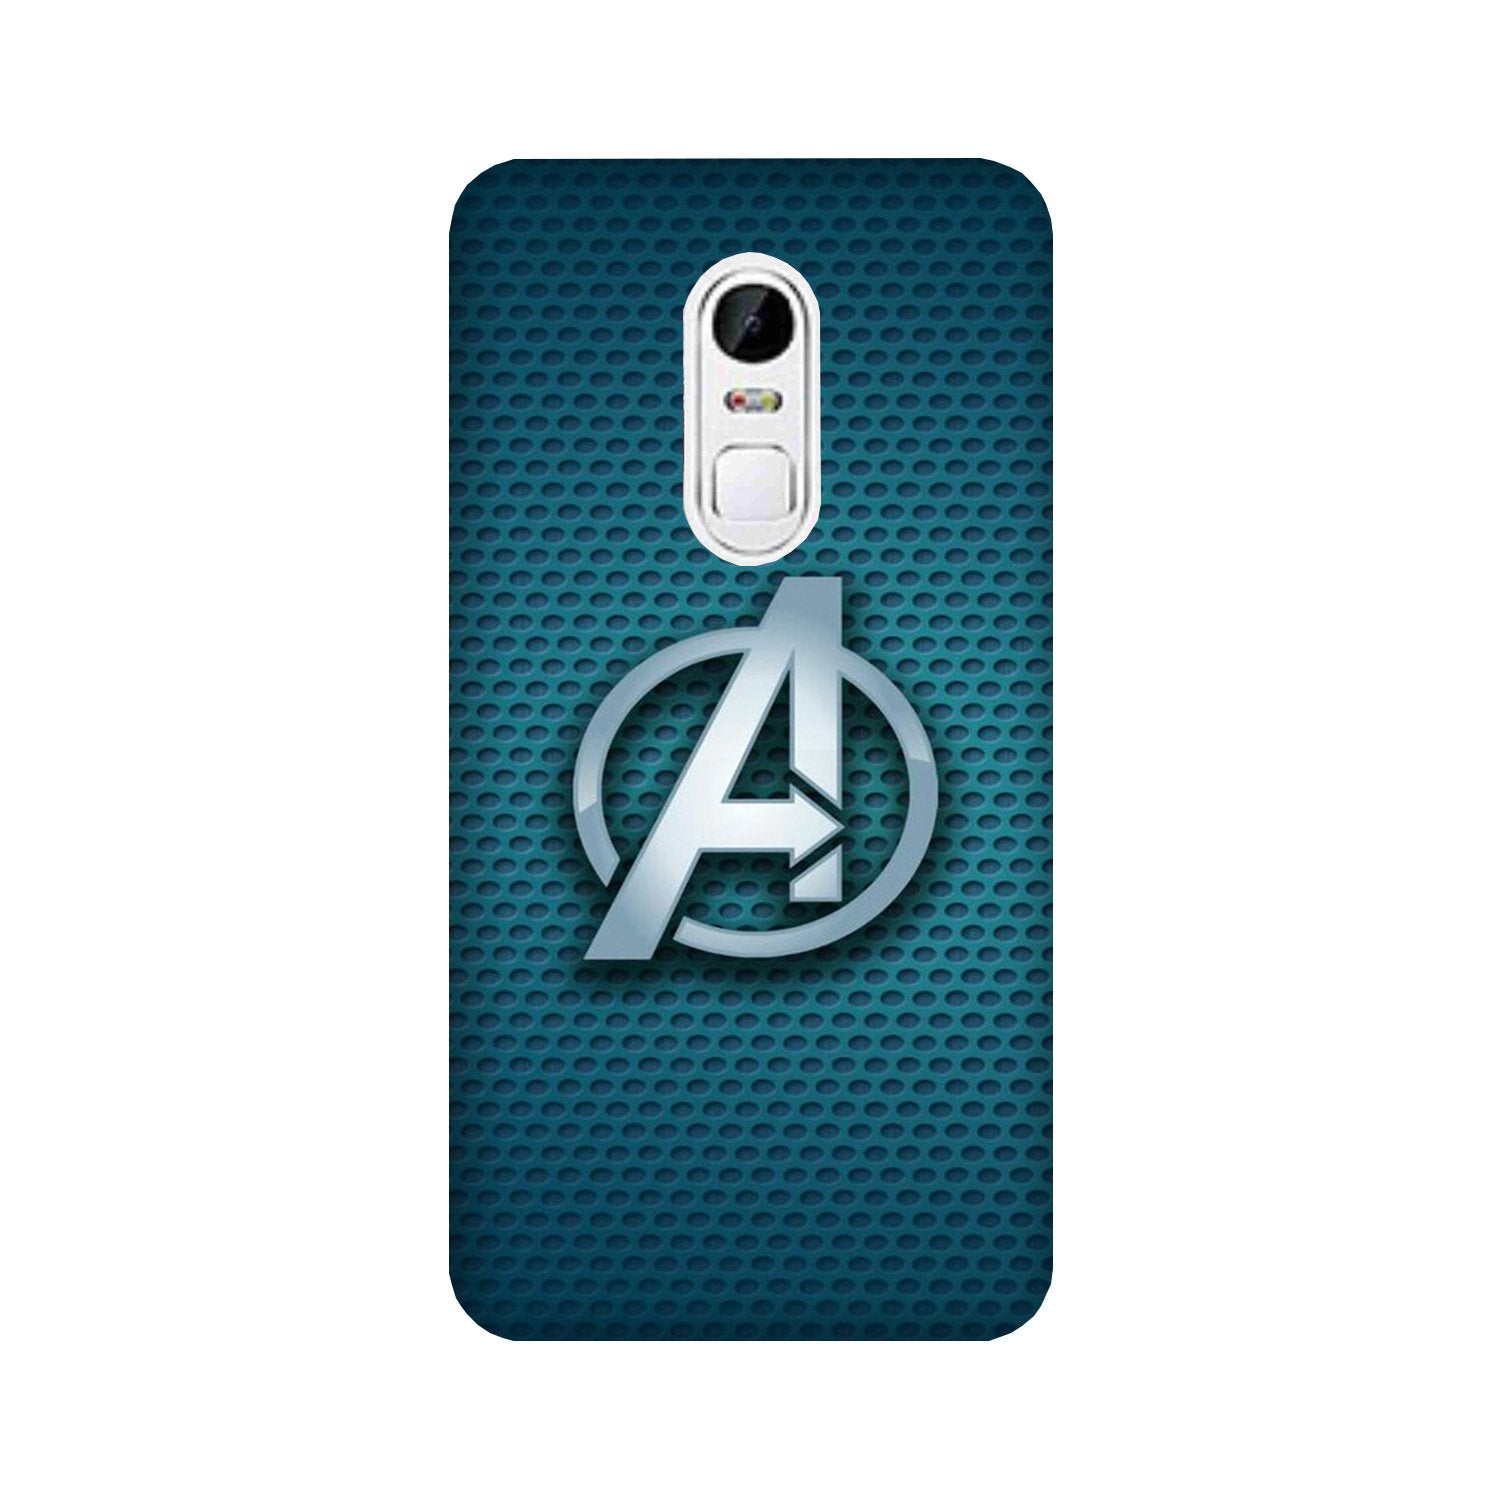 Avengers Case for Lenovo Vibe X3 (Design No. 246)